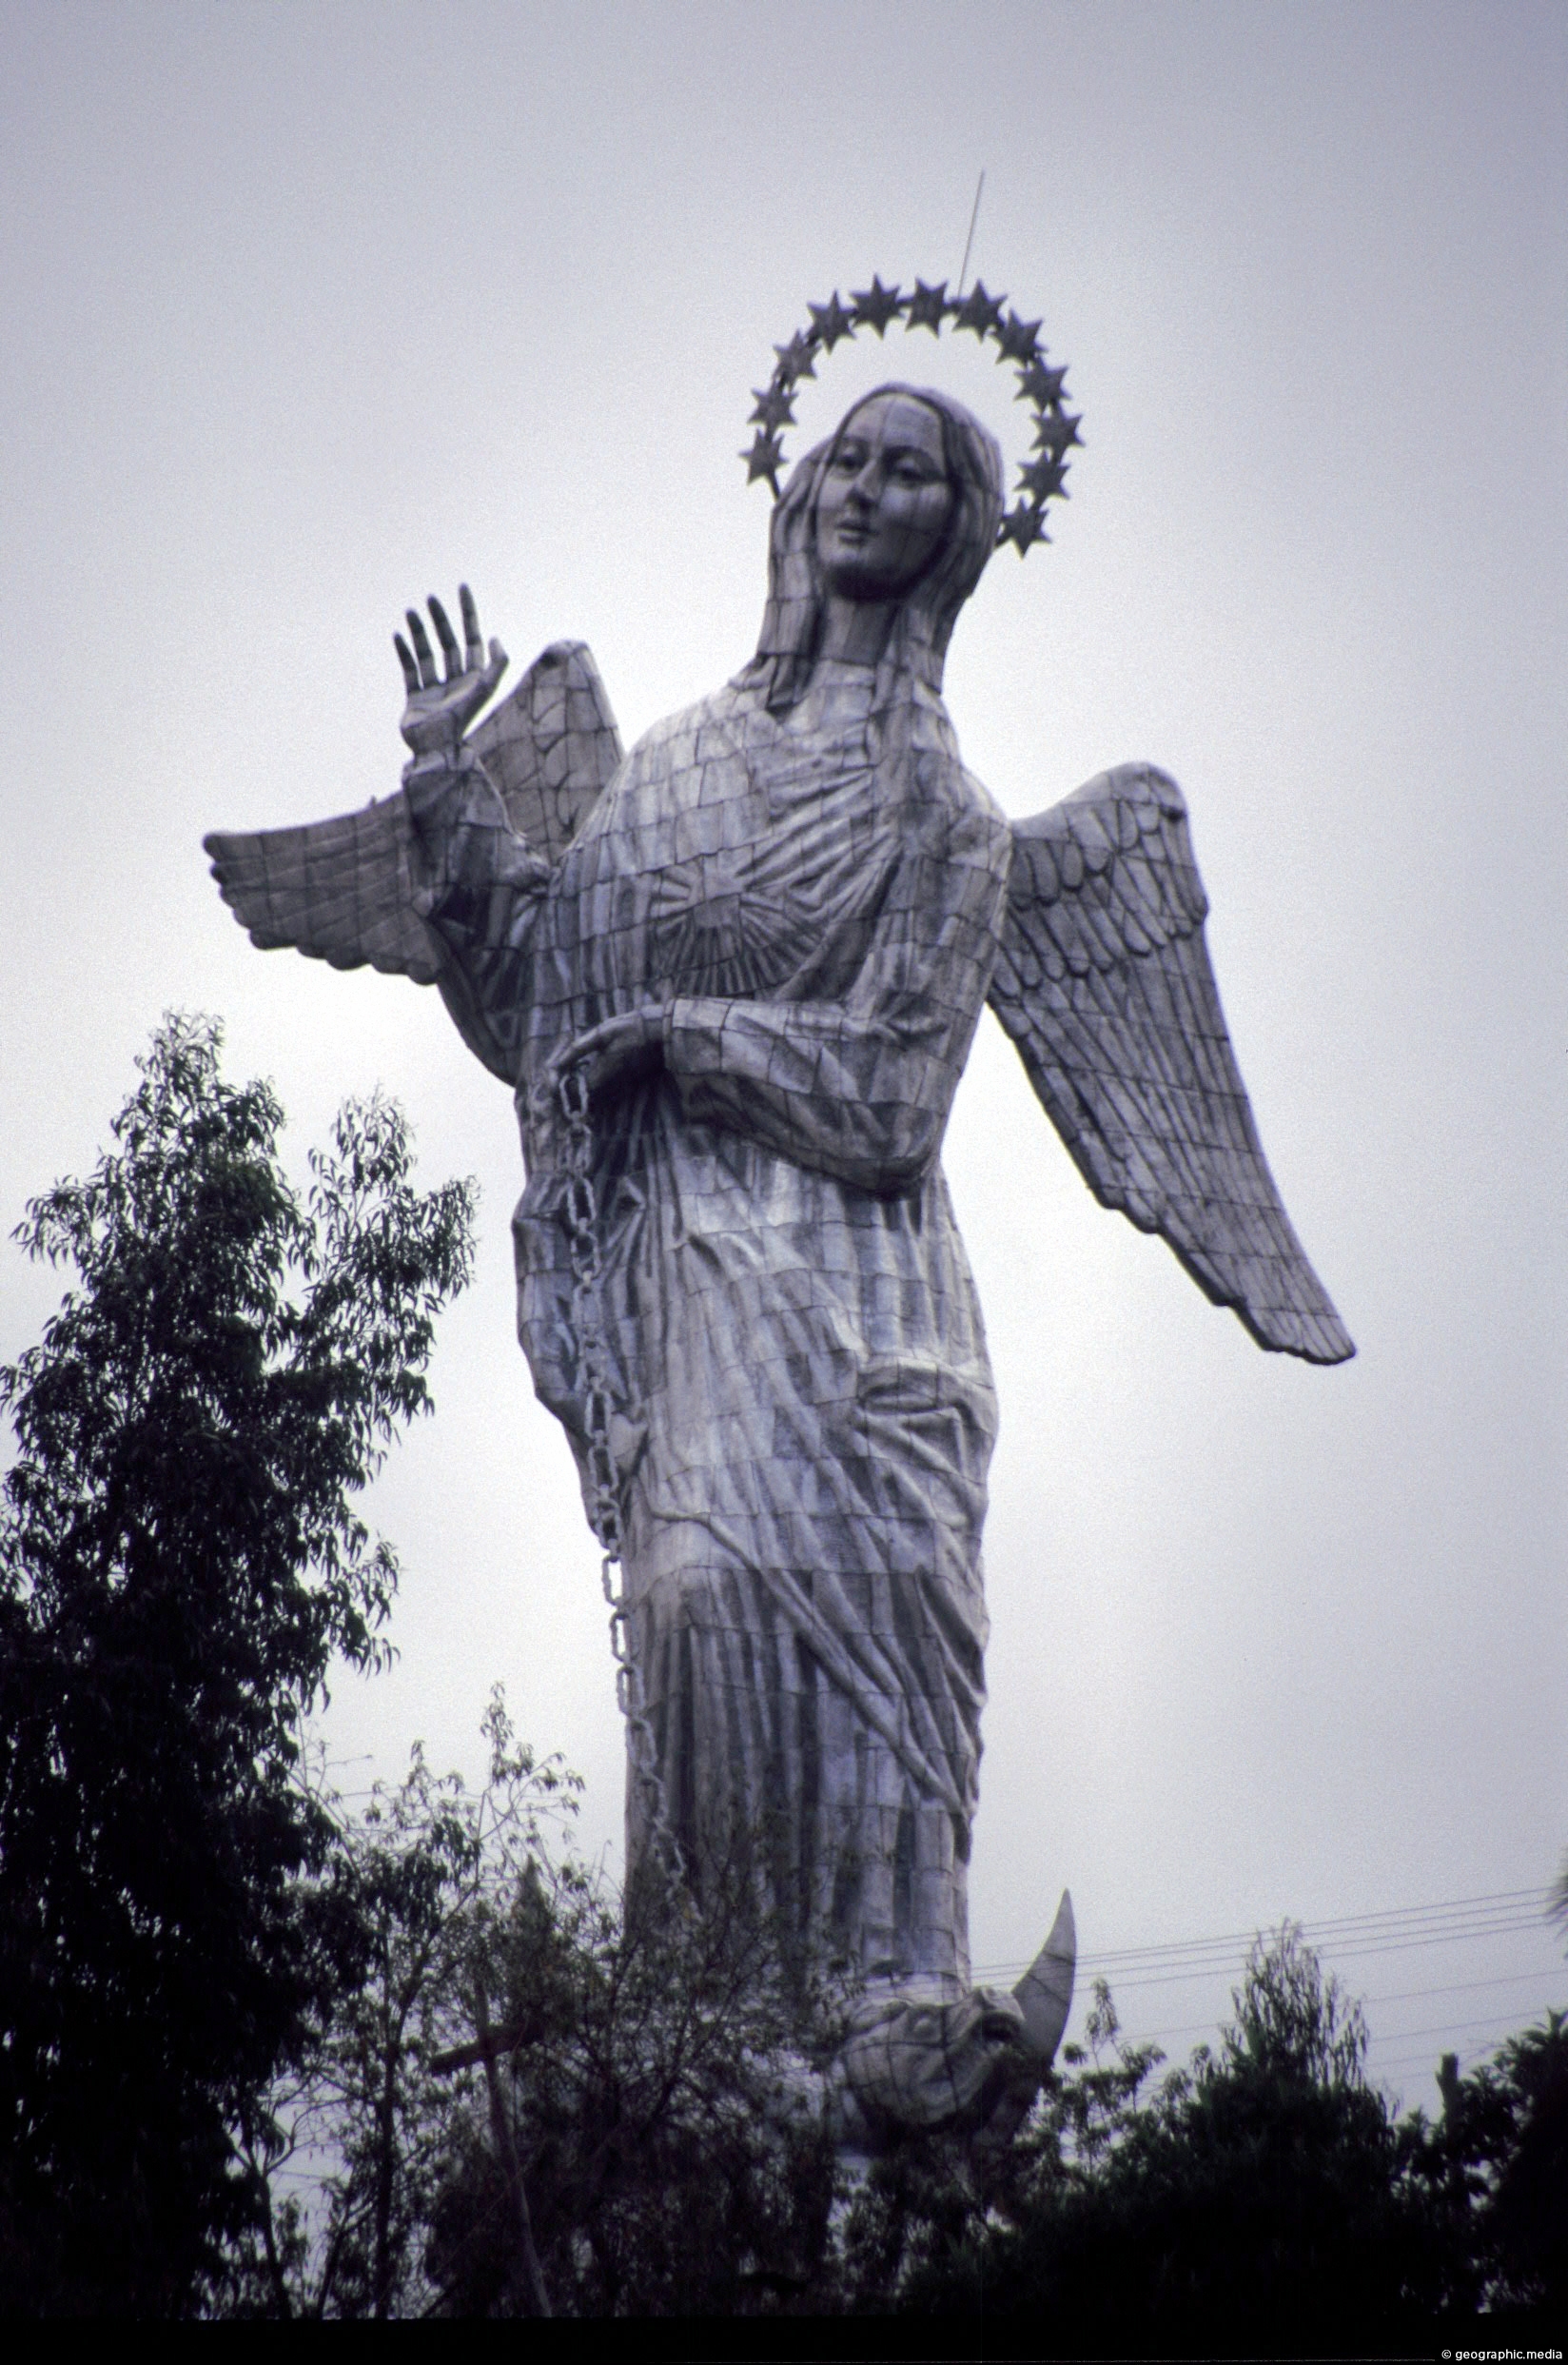 La Virgen de Quito in Ecuador